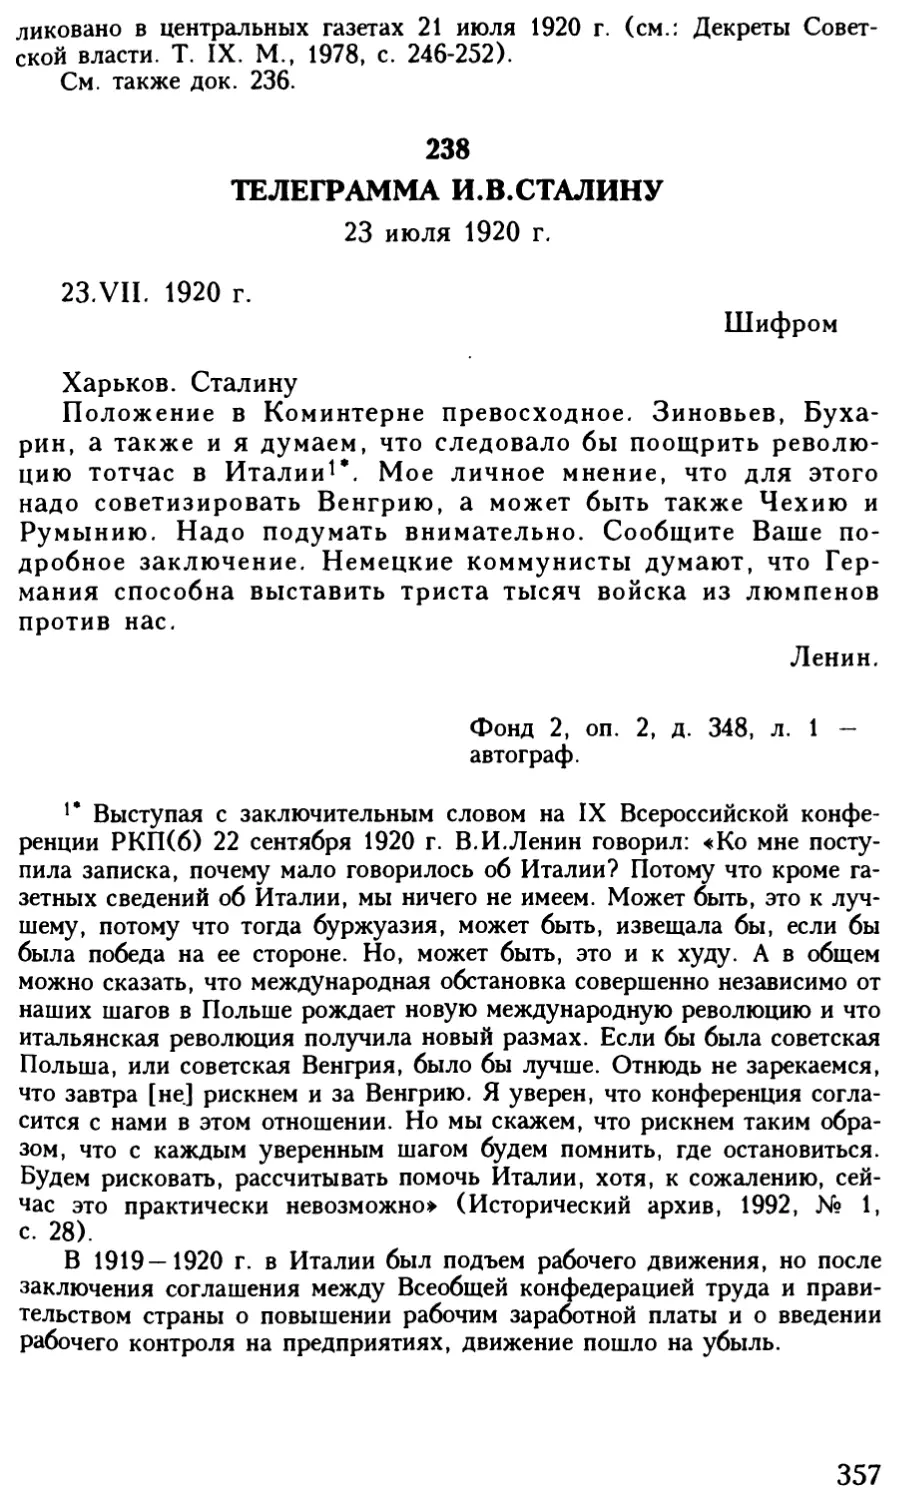 238. Телеграмма И.В.Сталину. 23 июля 1920 г